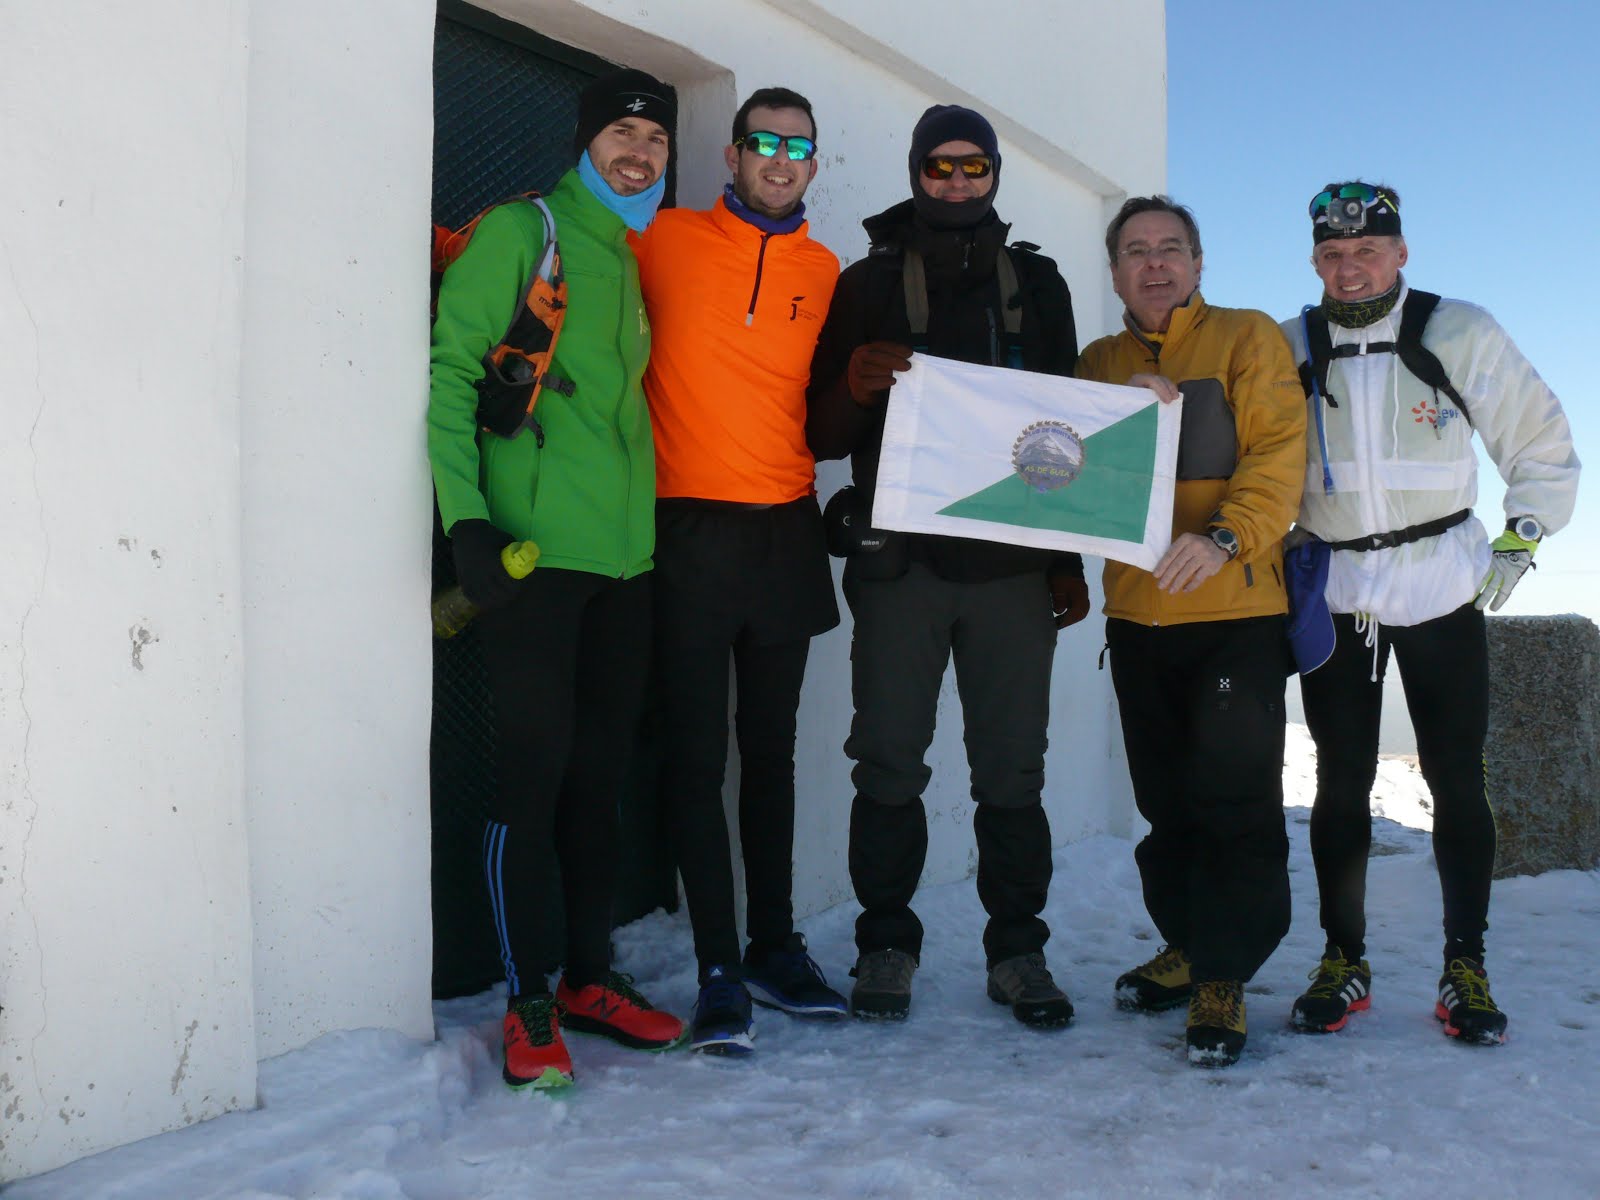 Club D. Montaña As de Guía de Jaén en la cima del pico Jabalcuz 1.614 msnm, 11 febrero 2018